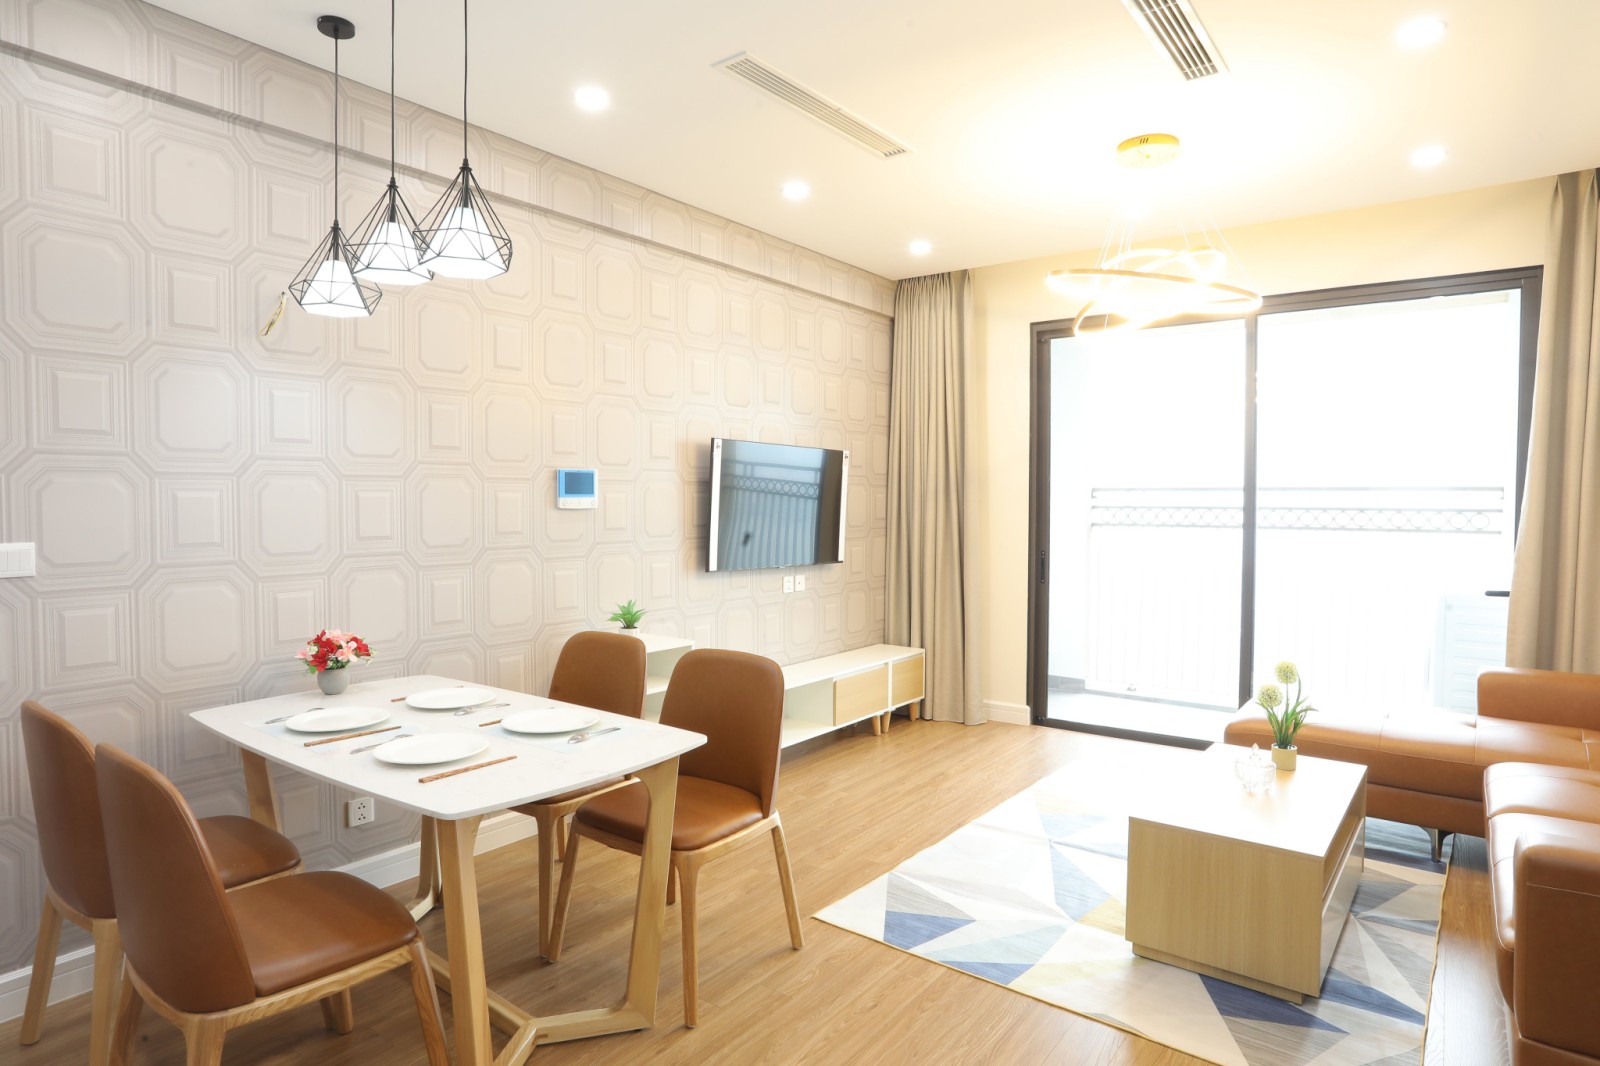 Favorable apartment in D’. El Dorado – 2bedroom for lease